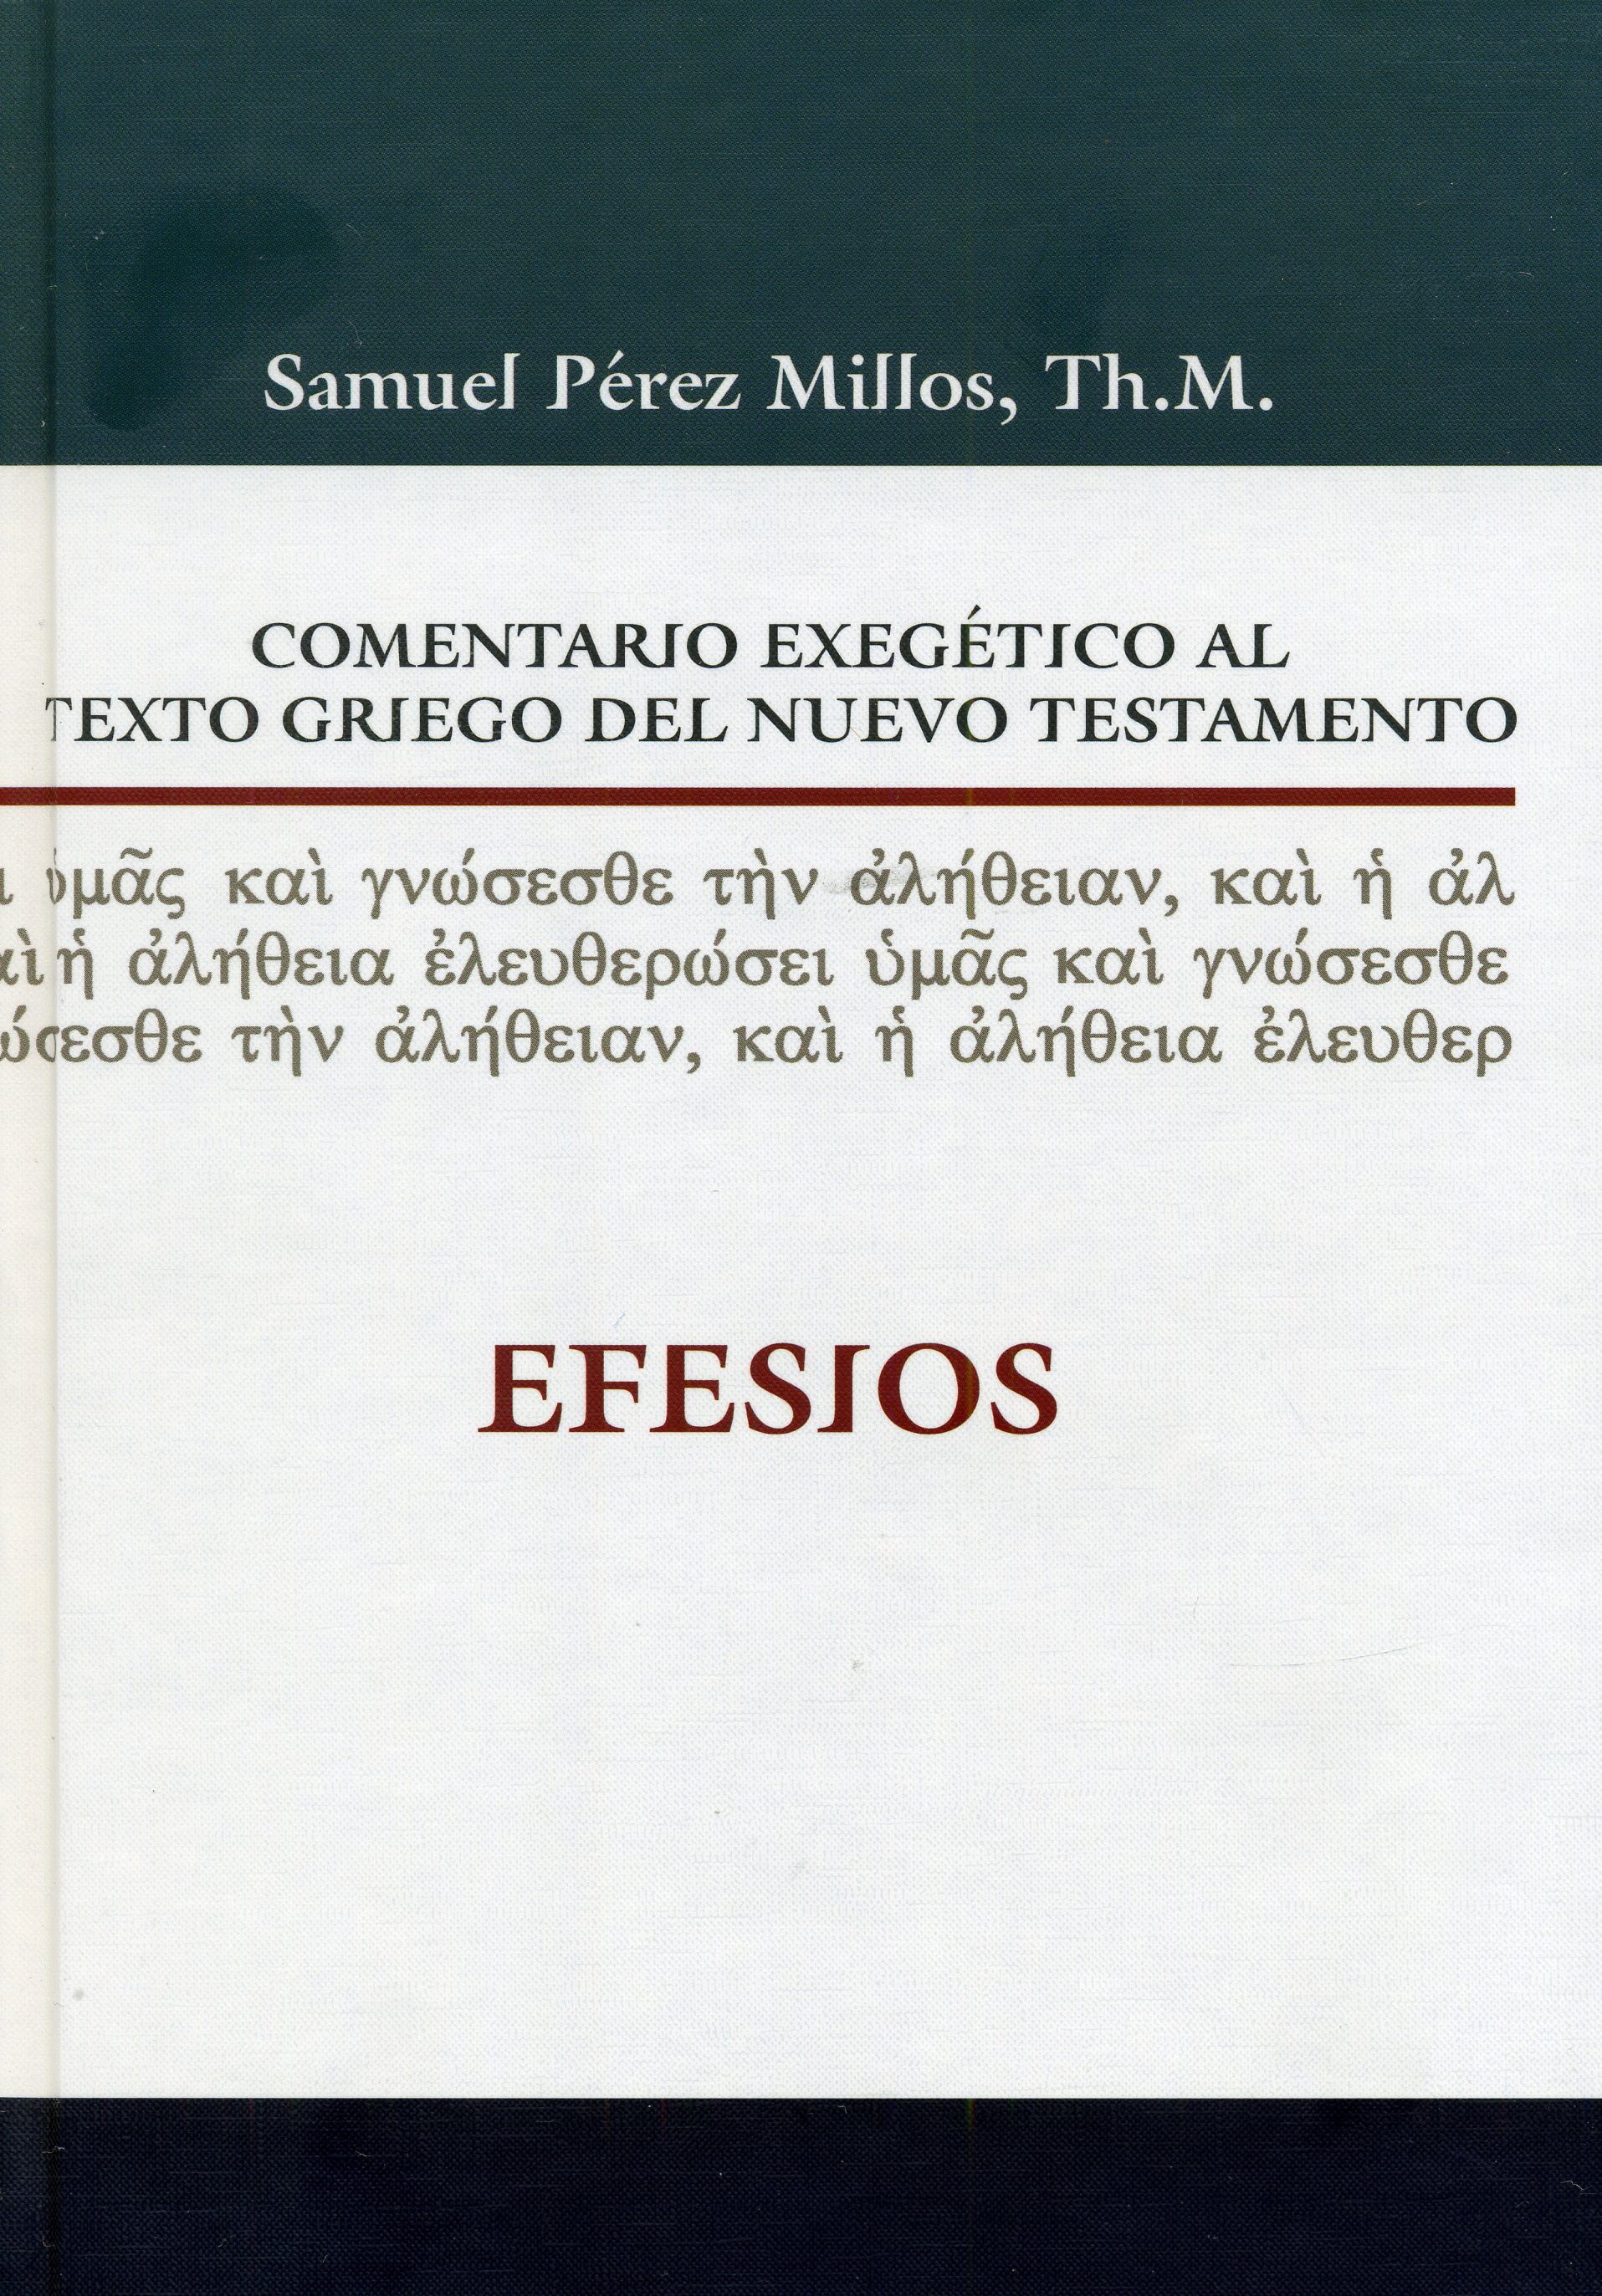 Comentario exegético al texto griego del nuevo testamento - Efesios